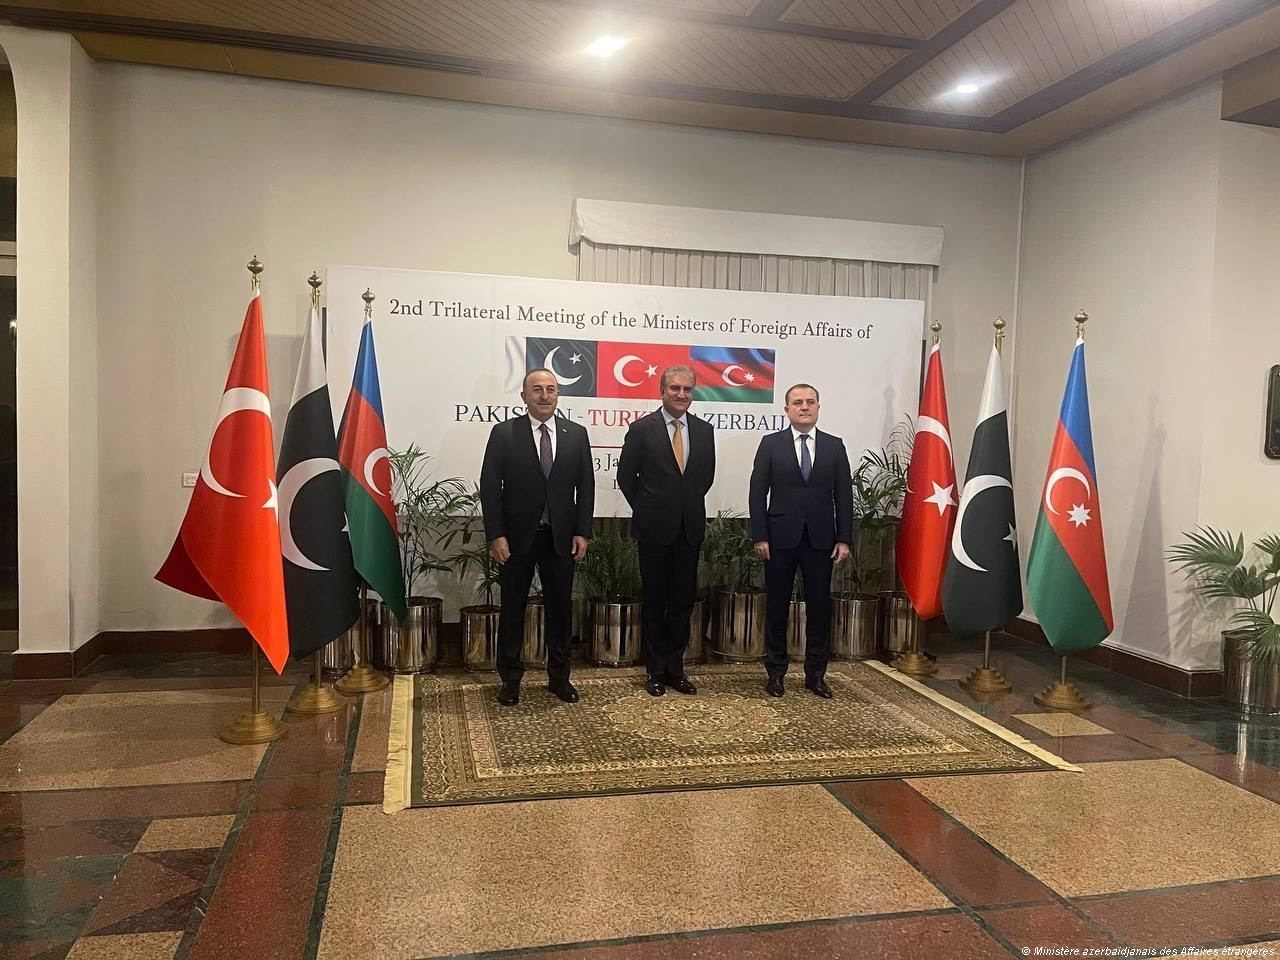 Déclaration d'Islamabad adoptée par les ministres des Affaires étrangères de l'Azerbaïdjan, du Pakistan et de la Turquie (PHOTO)